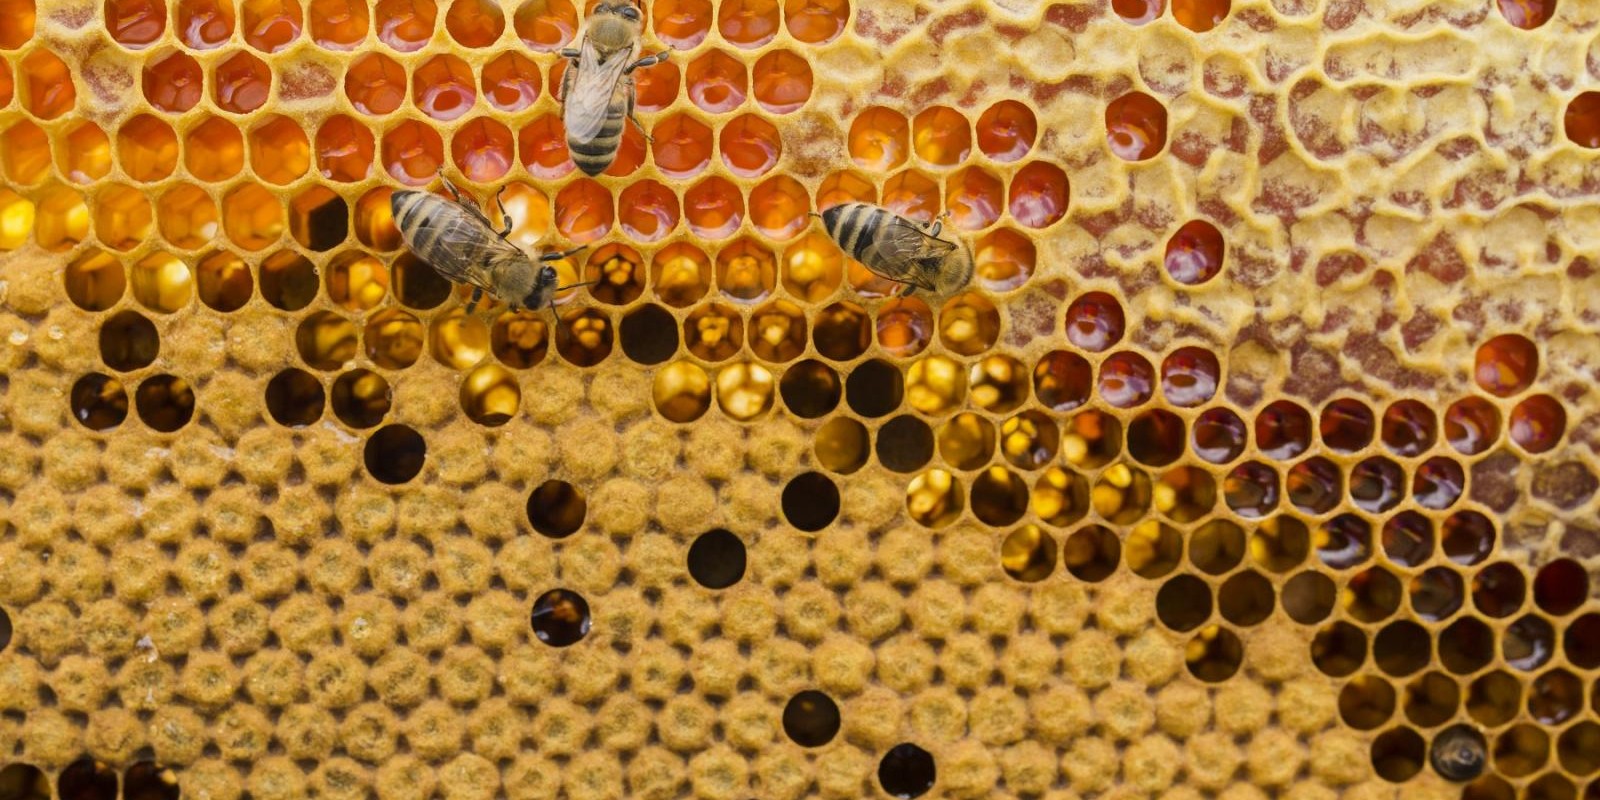 Secretaria de Agricultura lança cartilha sobre mel e derivados